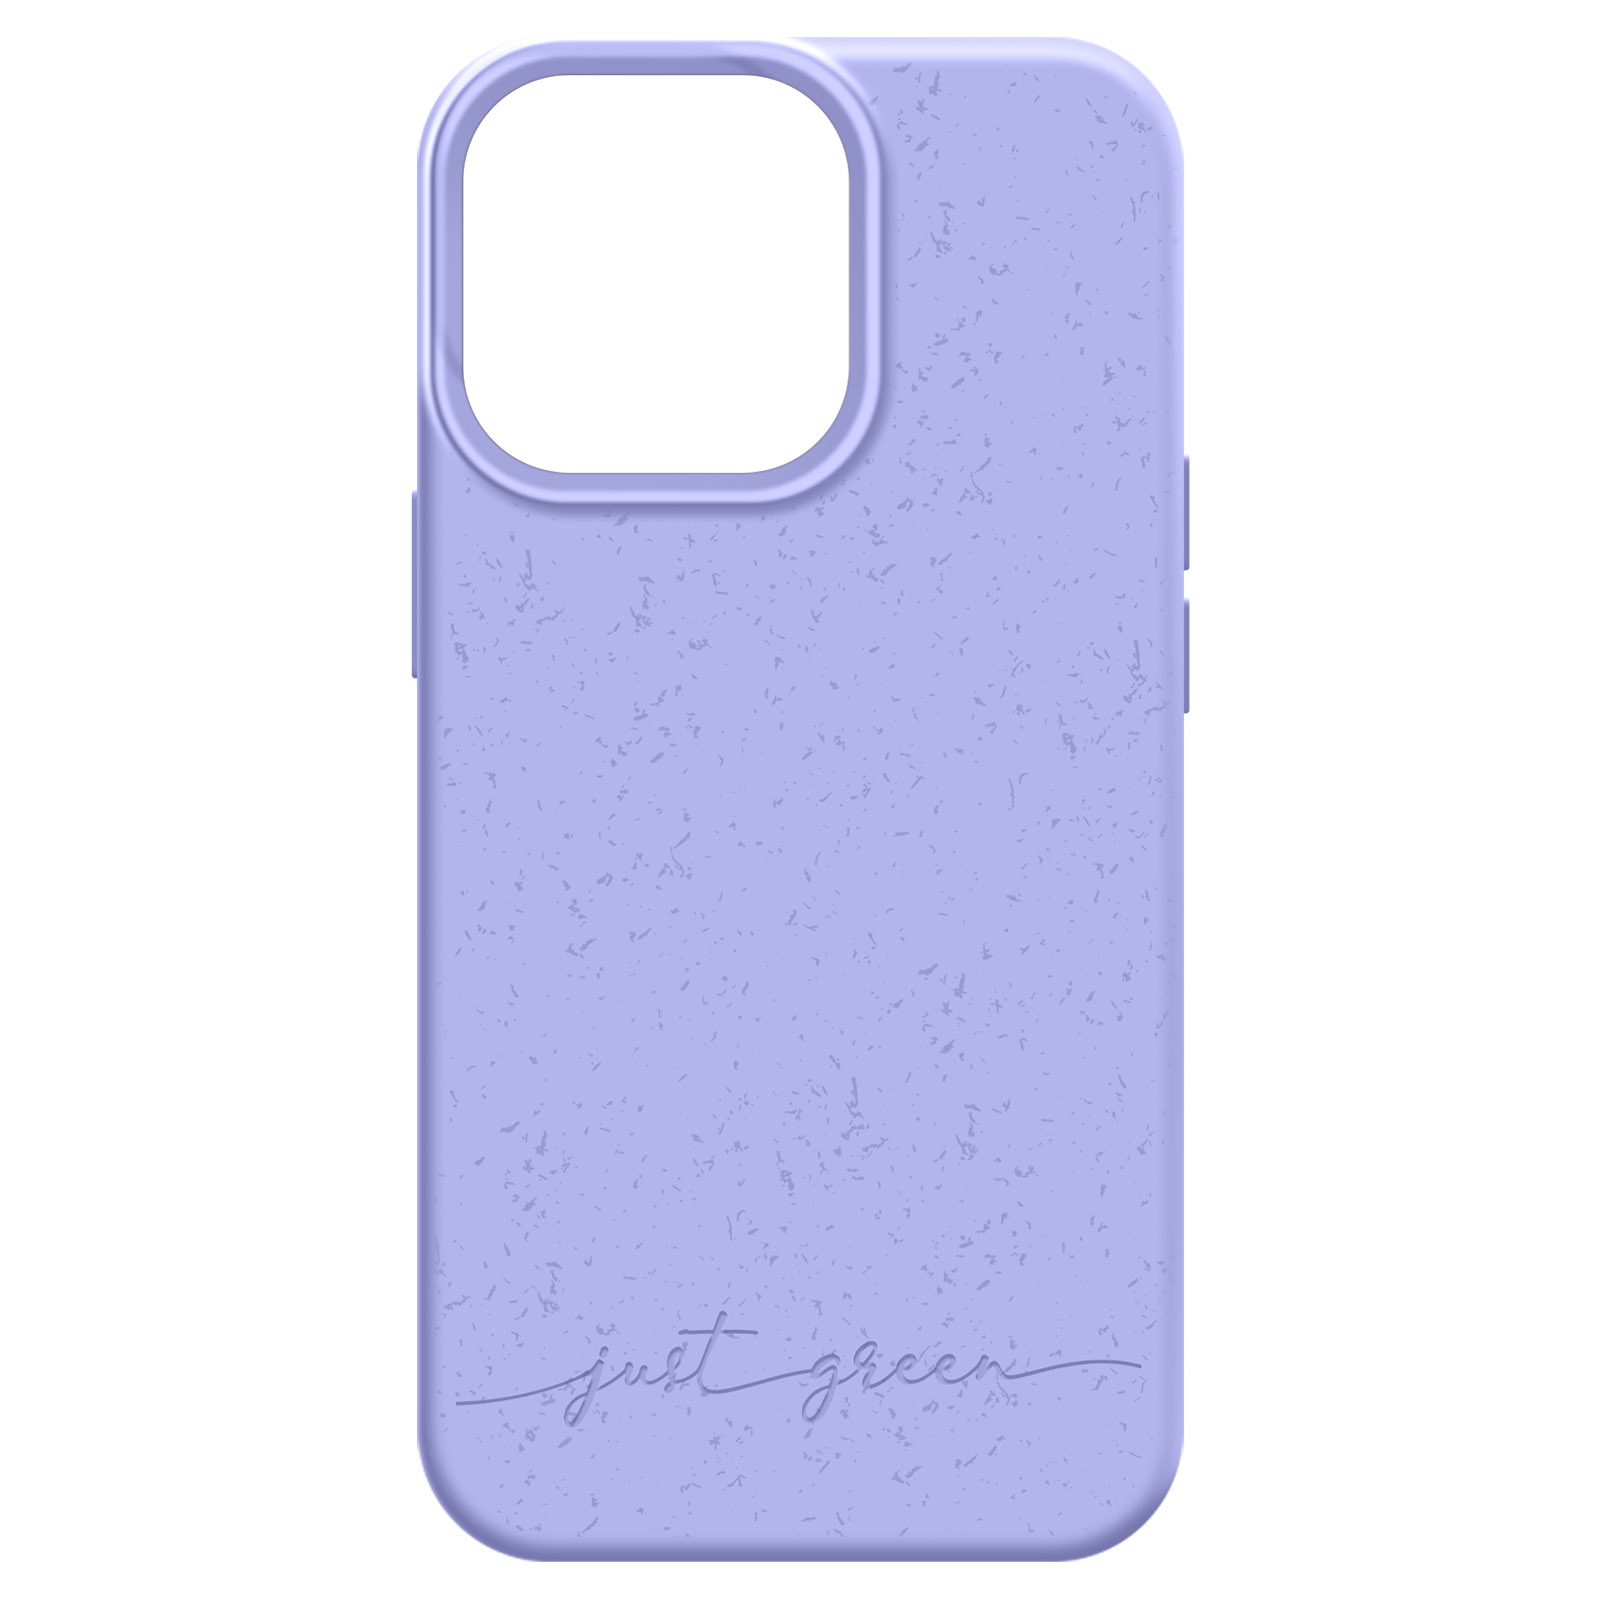 JUST GREEN 100% biologisch abbaubare iPhone Backcover, Series, Violett Handyhülle 13 Apple, Pro